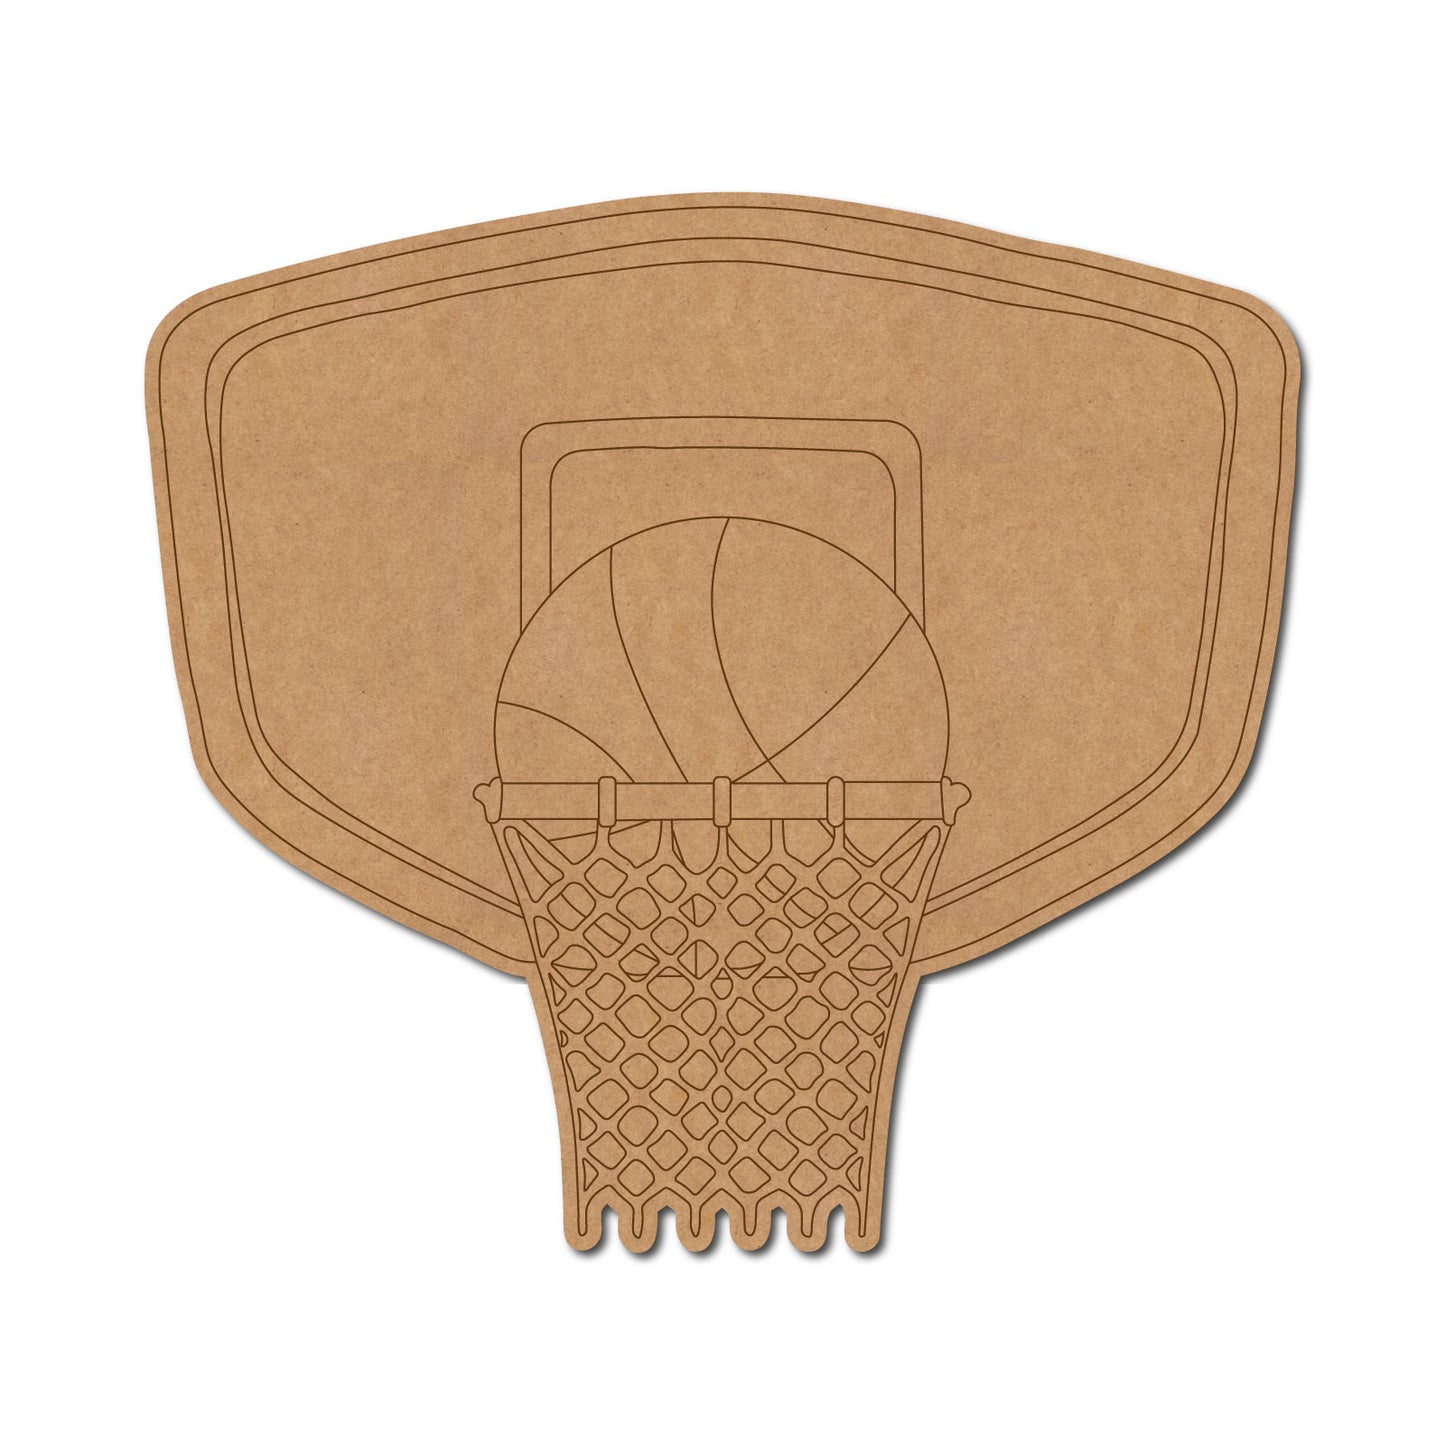 Basketball Hoop Pre Marked MDF Design 1